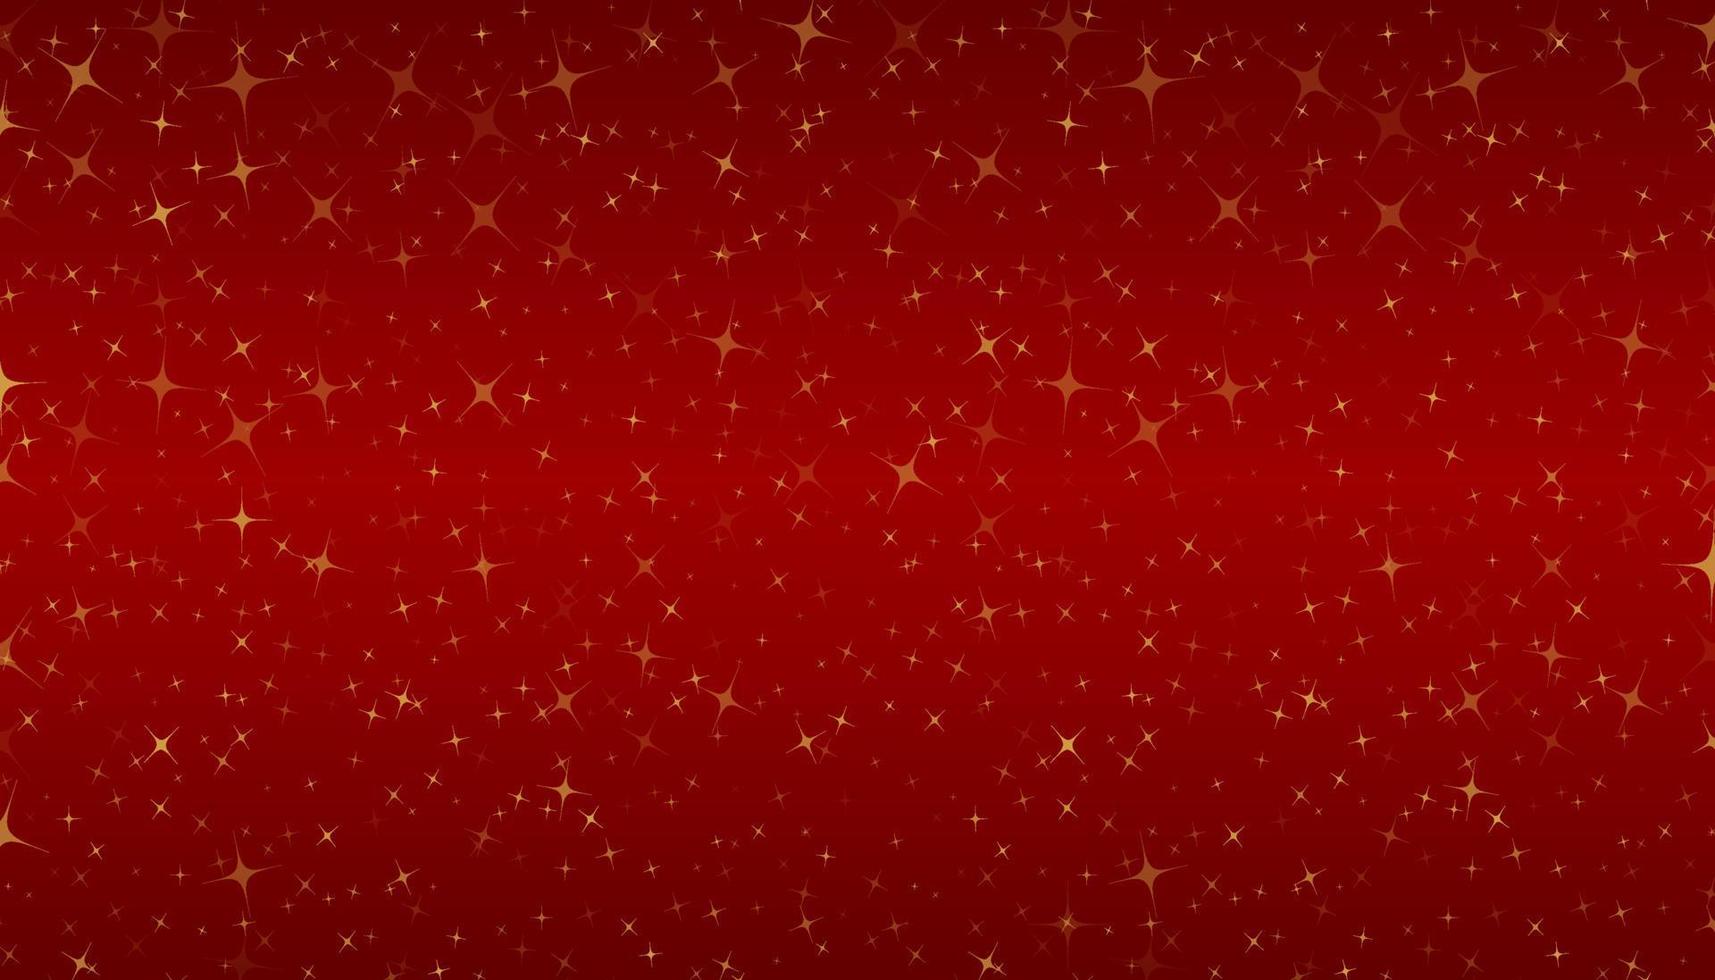 slumpmässiga guld glimtar små stjärnor på röd gradient bakgrund. Använd för semester, festliga, evenemang dekoration element eller mall. vektor